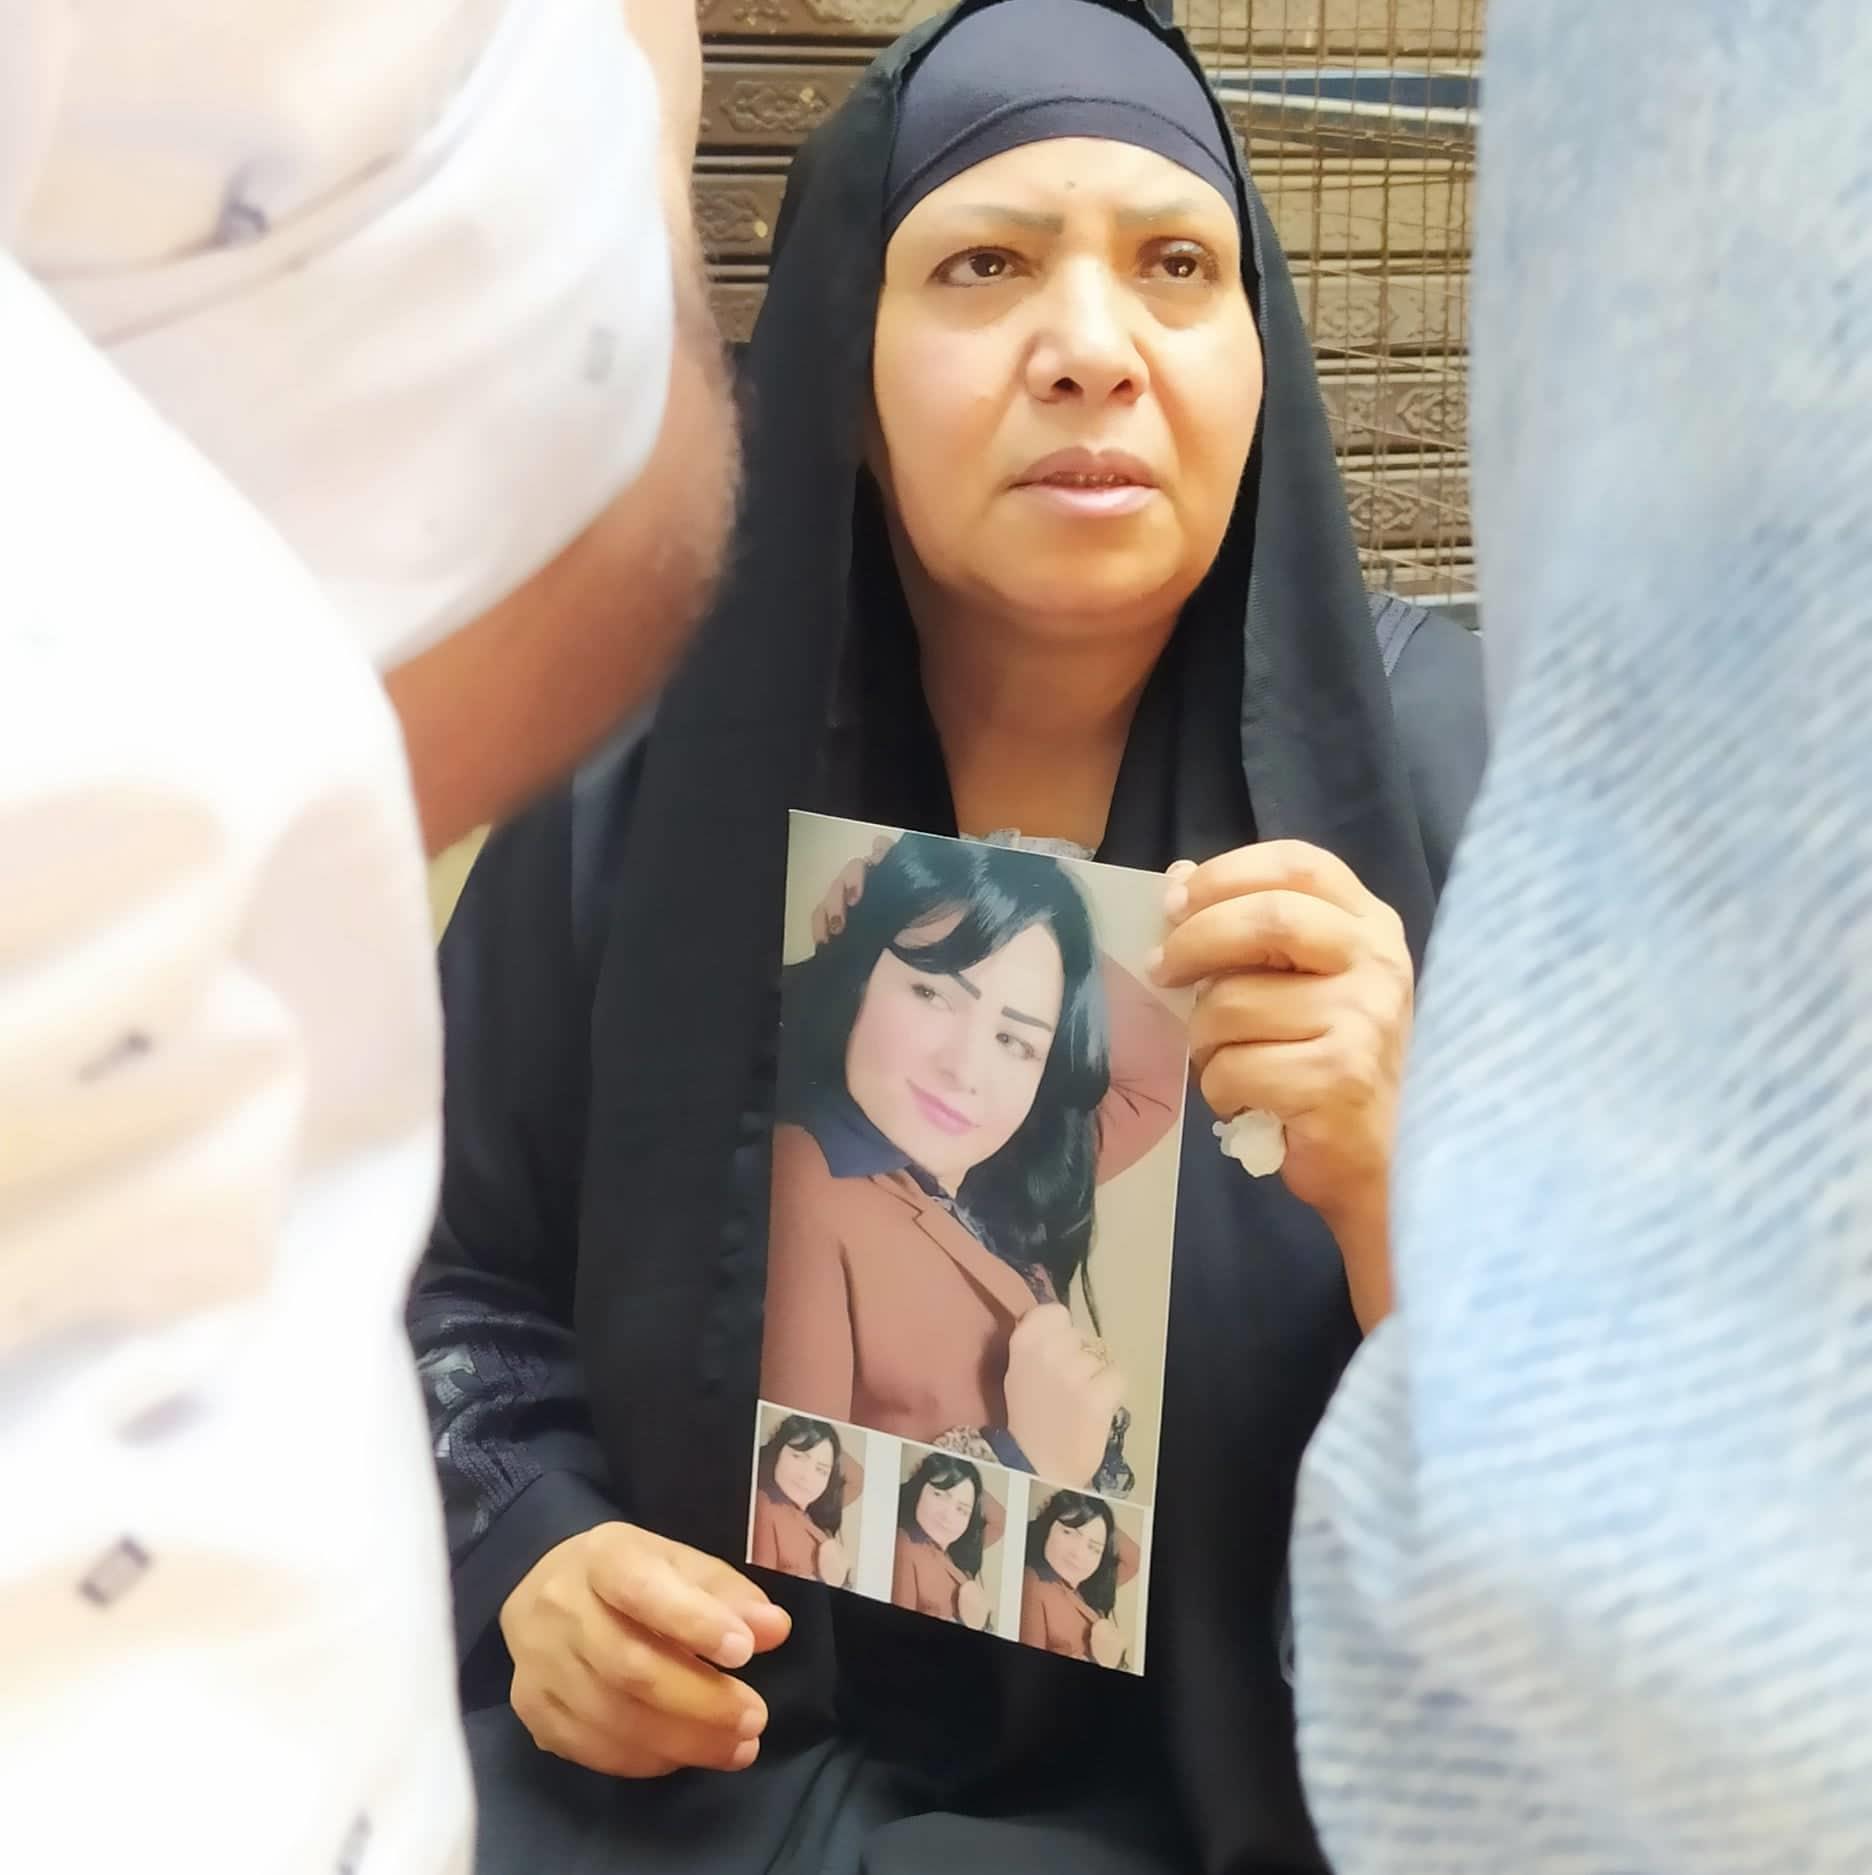  وصول أسرة الإعلامية شيماء جمال إلى محكمة جنايات الجيزة